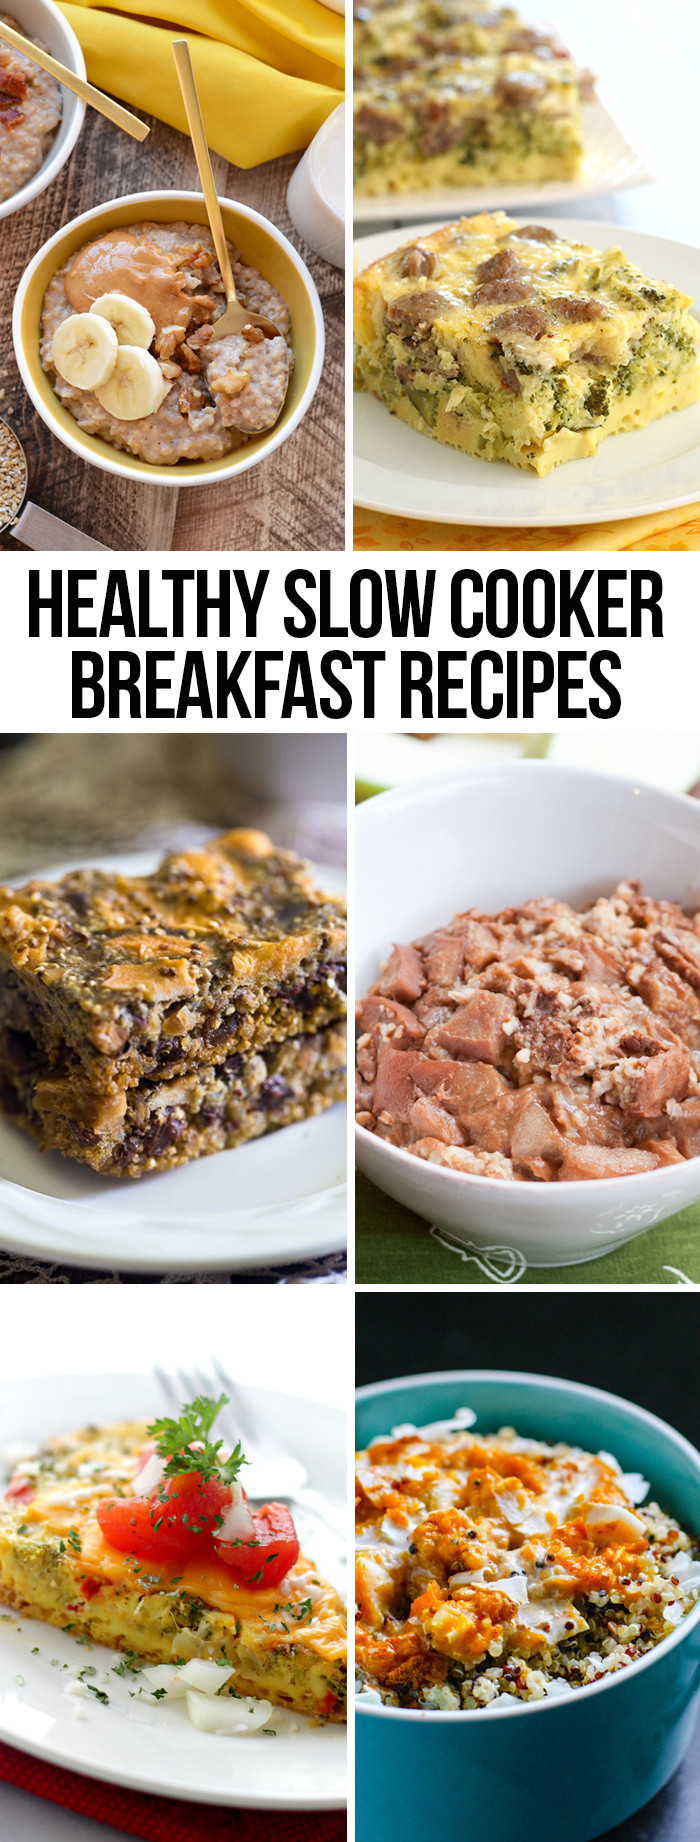 Best Healthy Breakfast Recipes
 Healthy Slow Cooker Breakfast Recipes